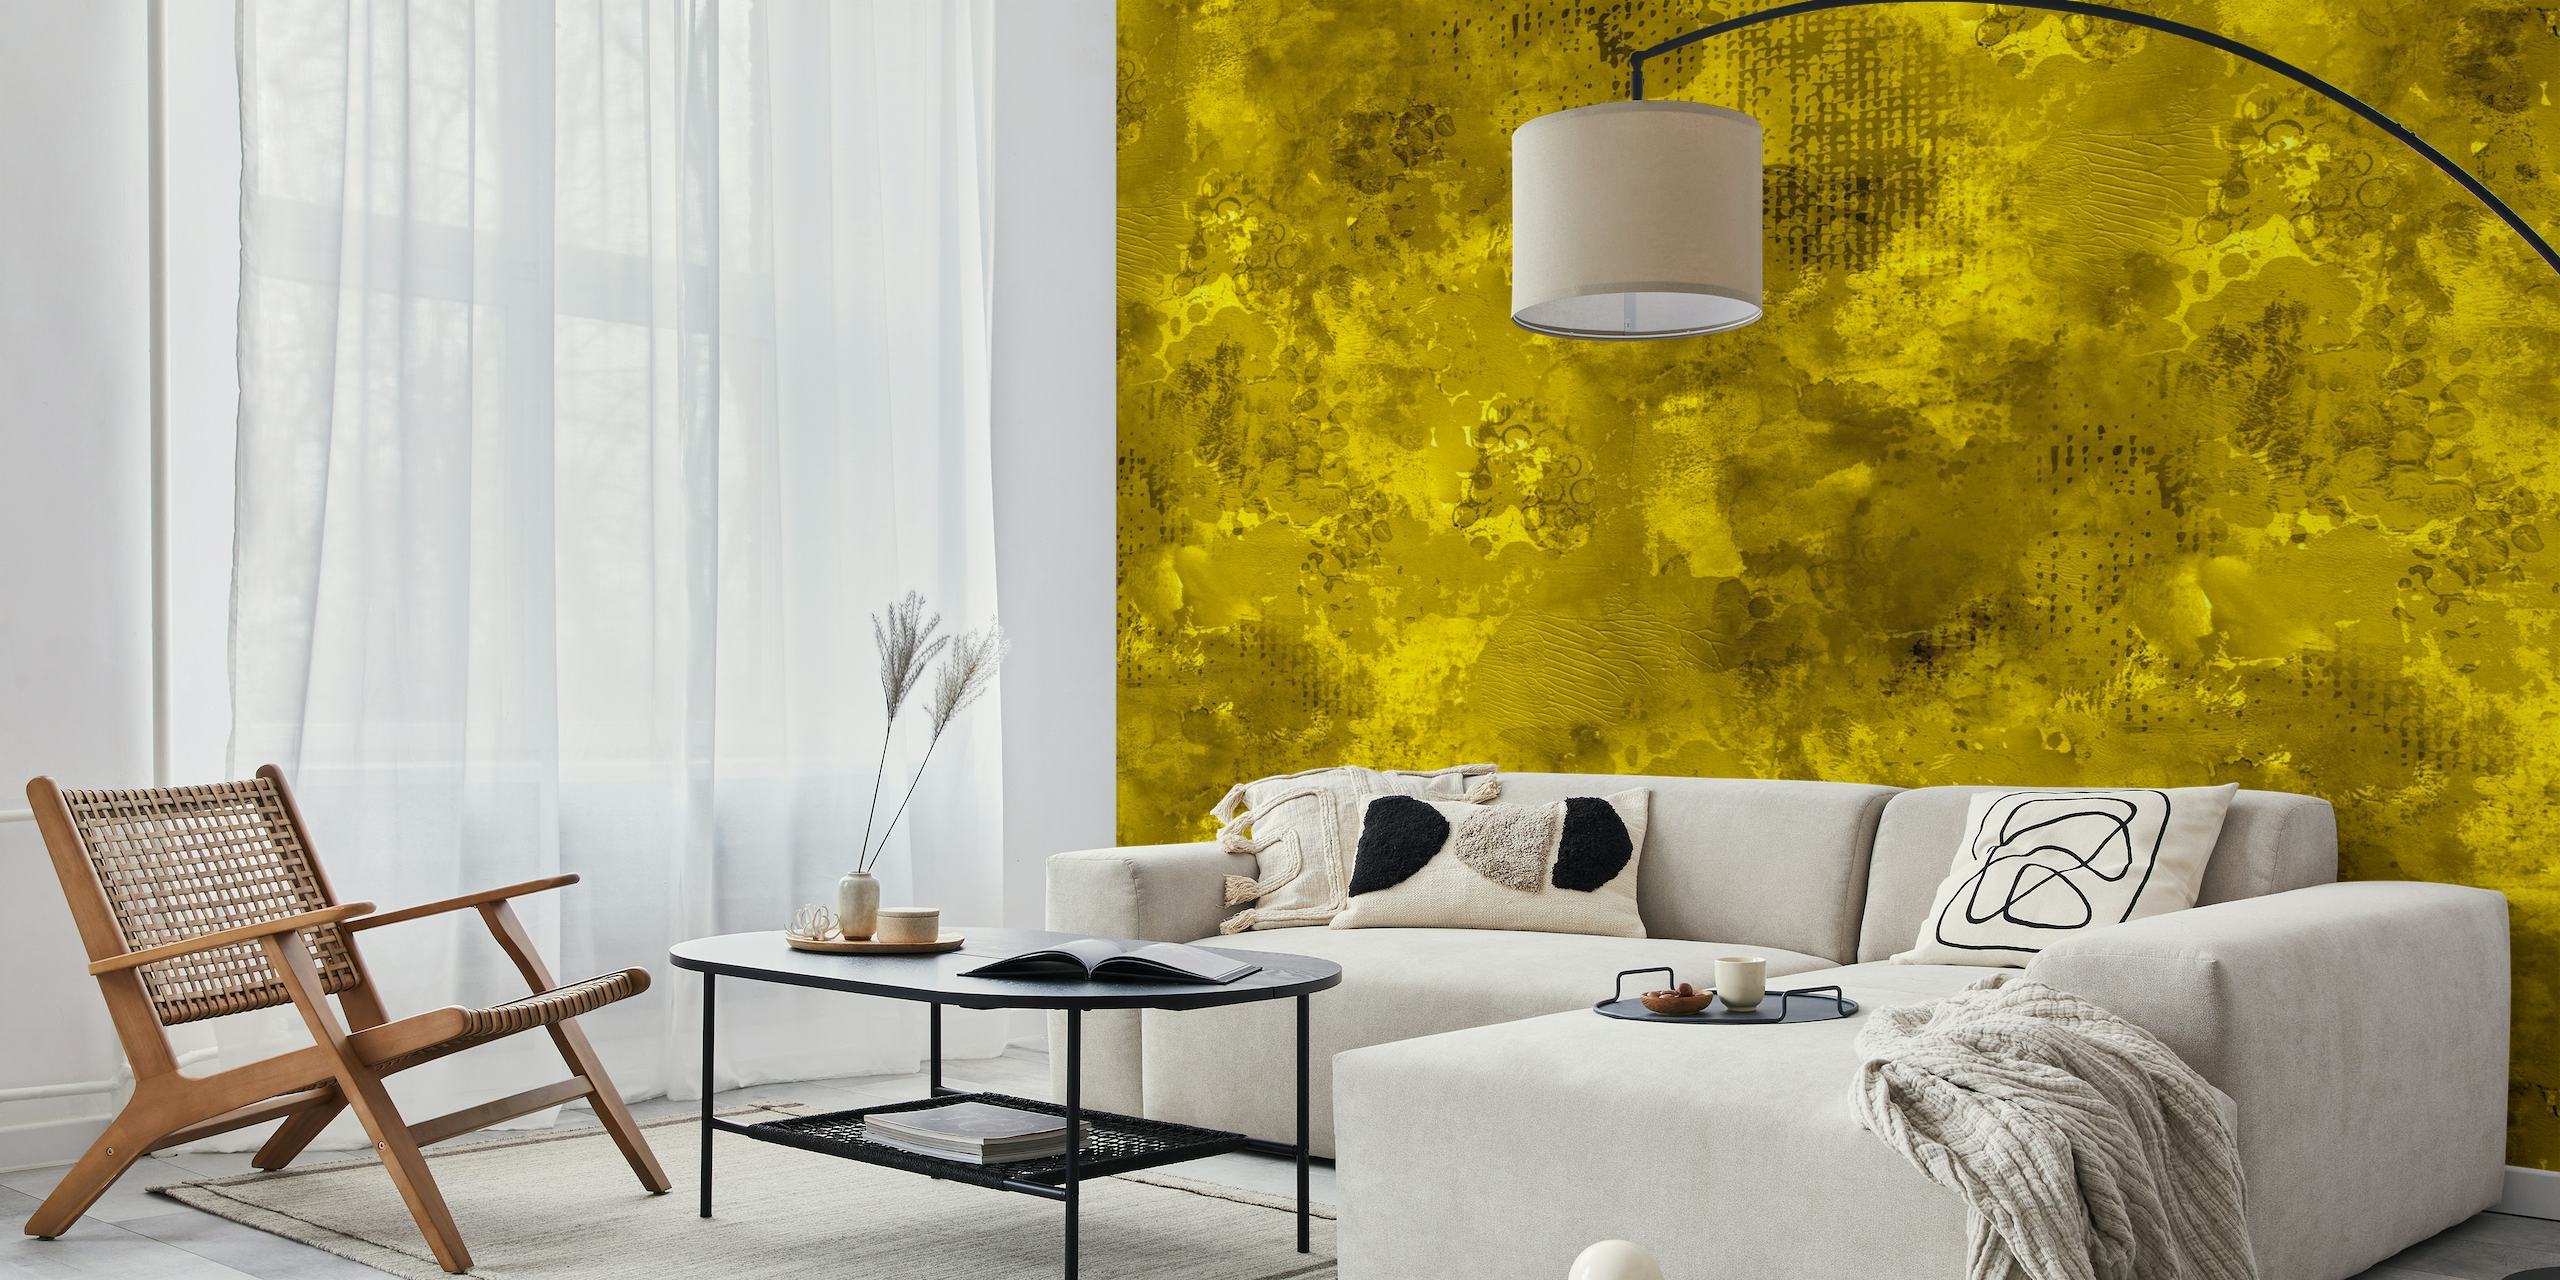 Dinamico e audace murale moderno astratto con vernice gialla che crea una vivida dichiarazione visiva.